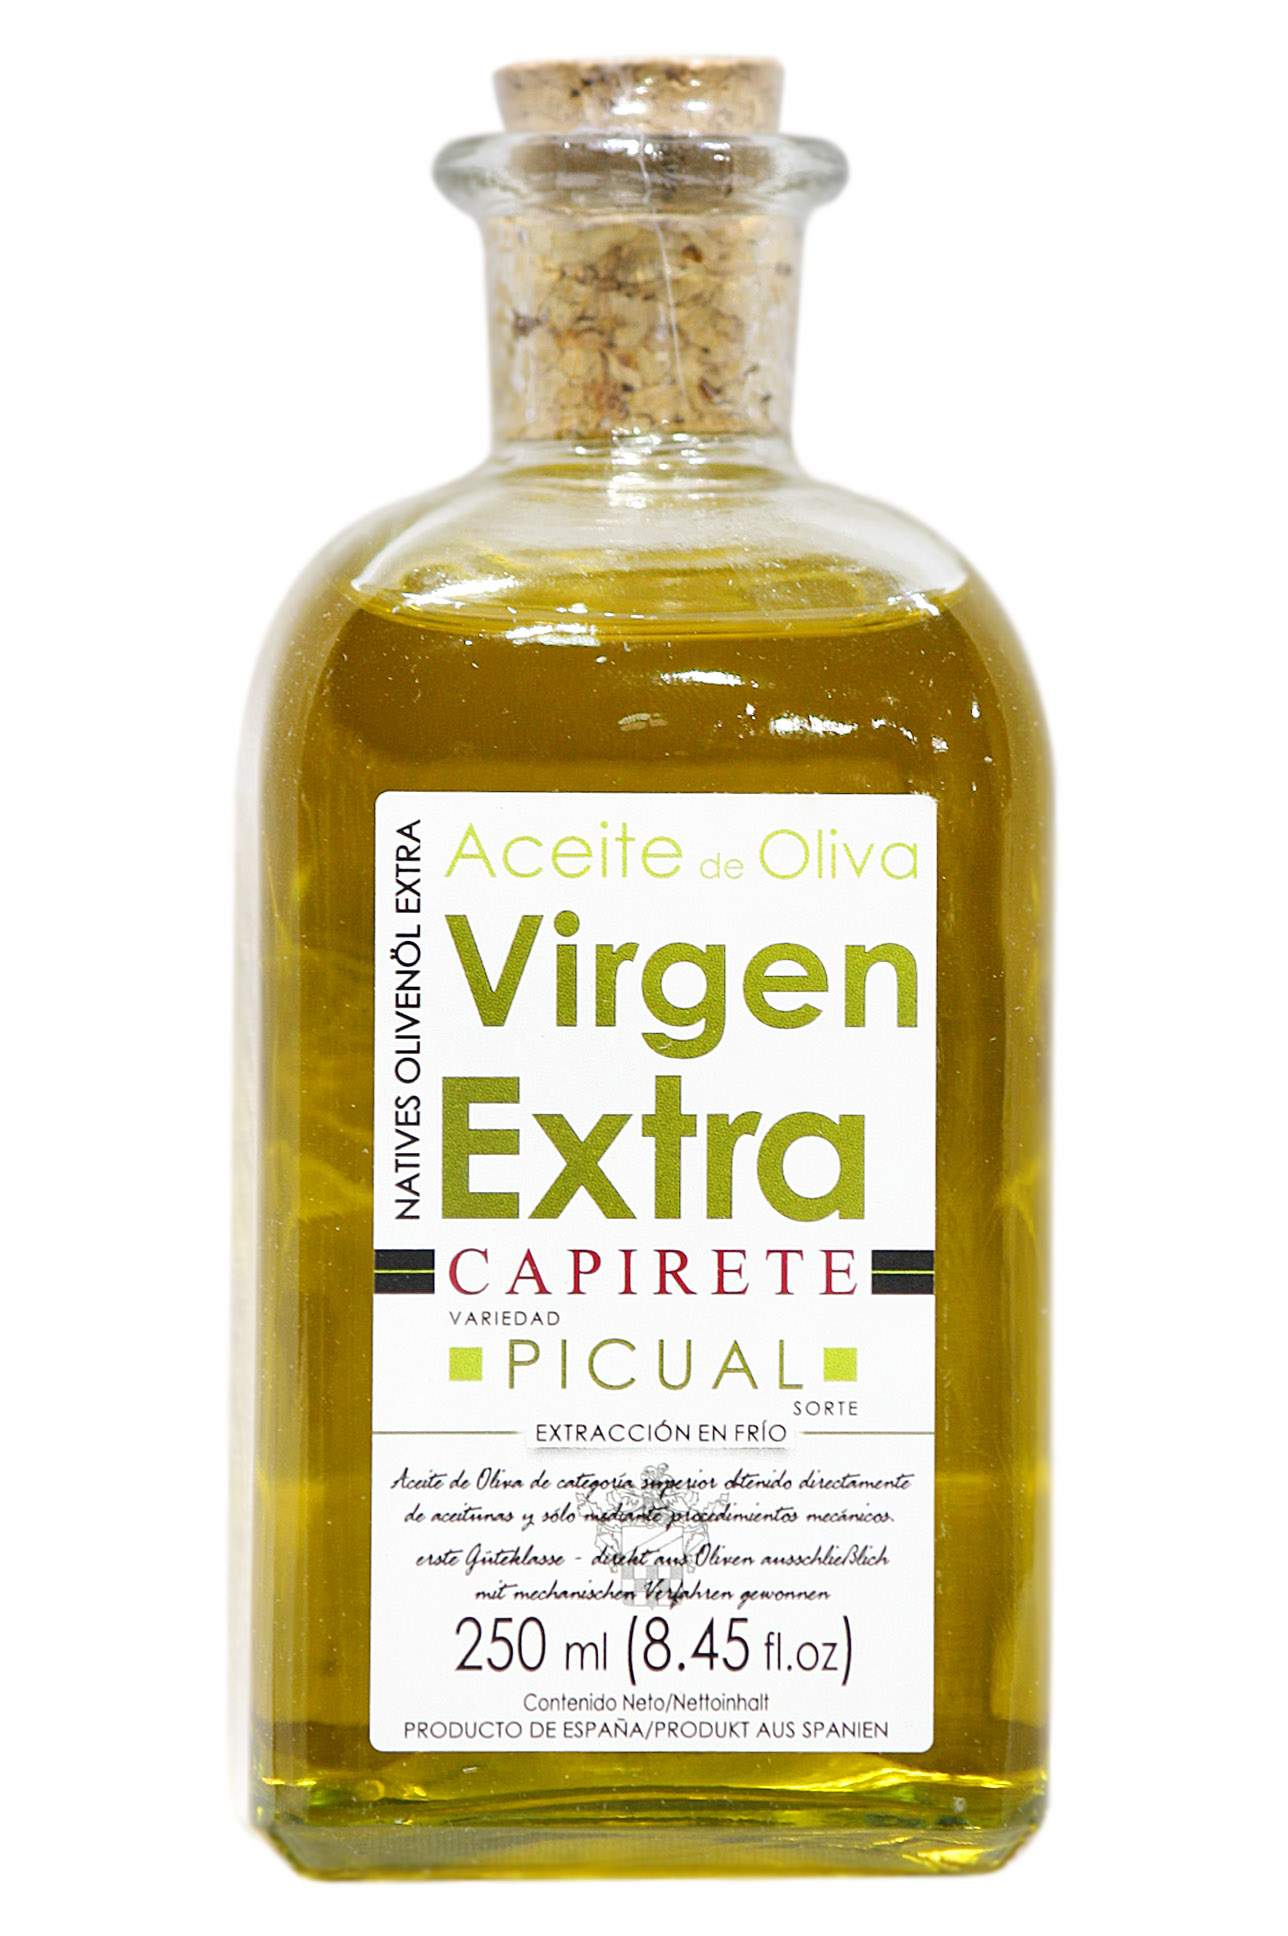 Aceite oliva virgen extra Capirete